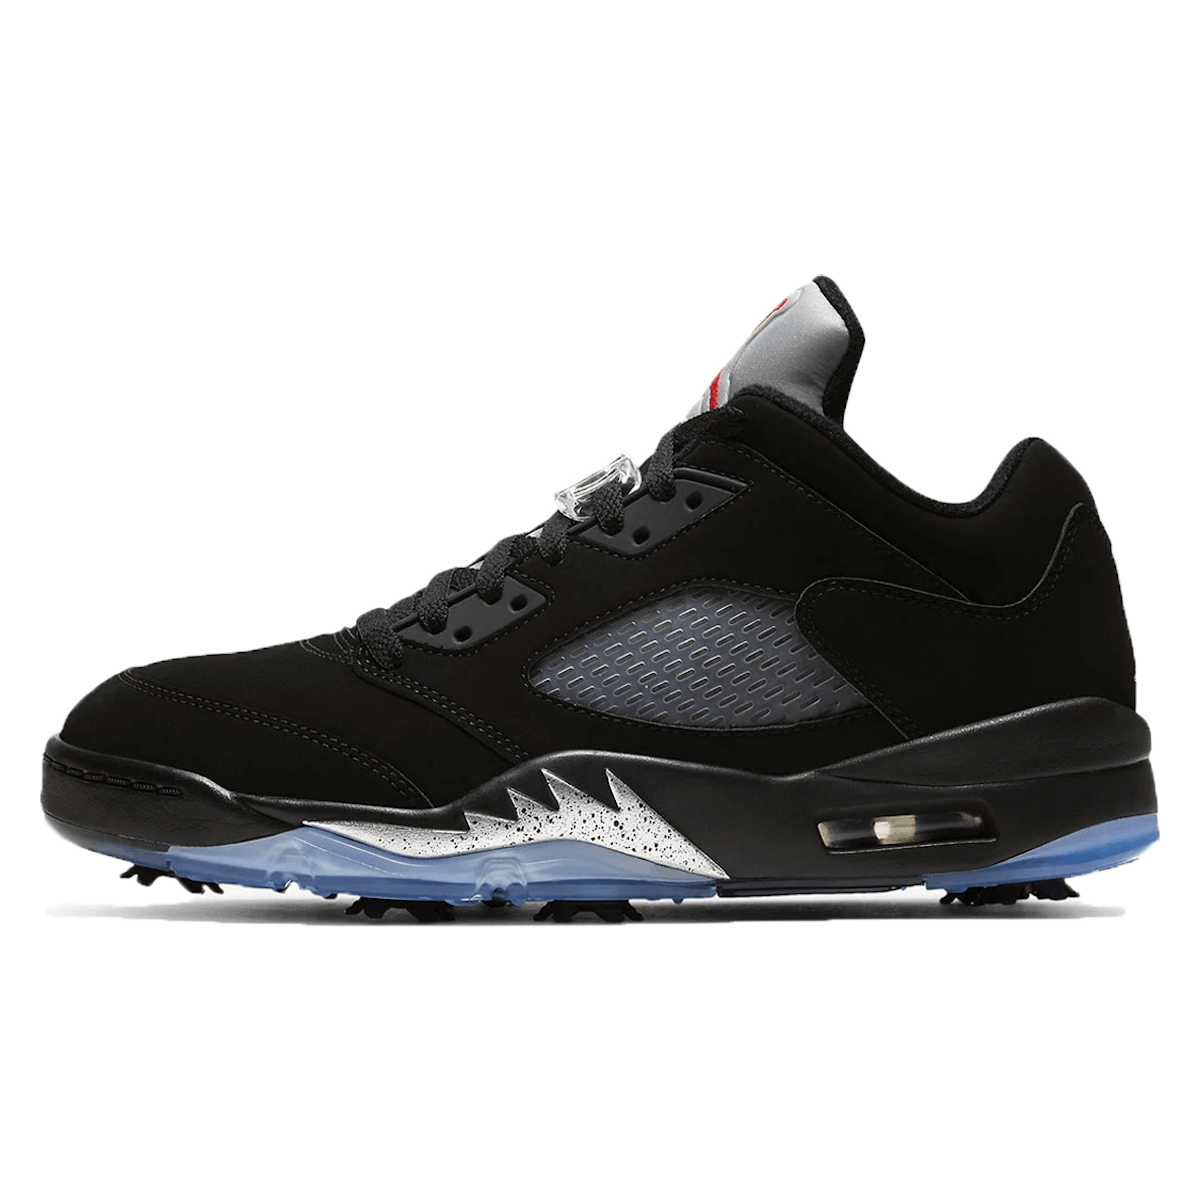 Air Jordan 5 Retro Low Golf Black Metallic